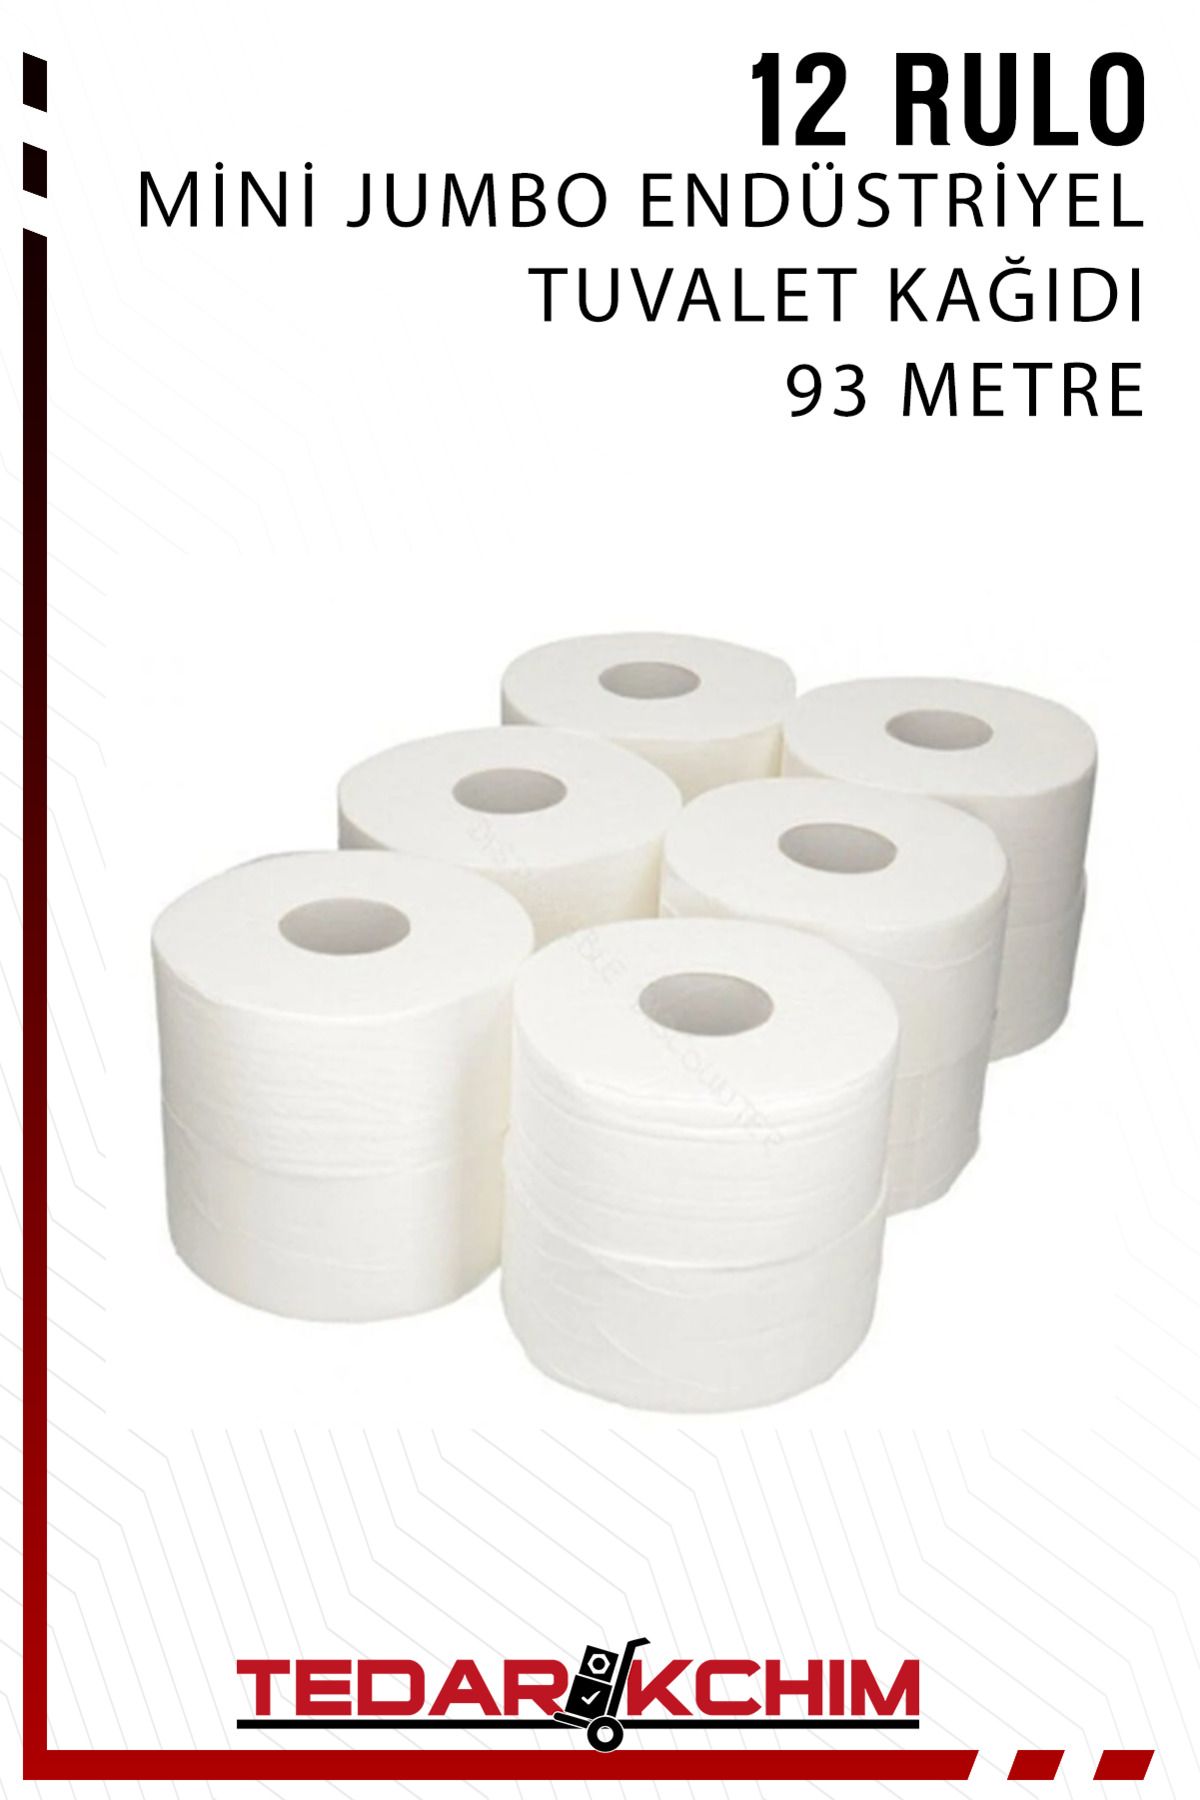 Koza End Mini Jumbo Endüstriyel Tuvalet Kağıdı 12 Rulo (93 Metre)